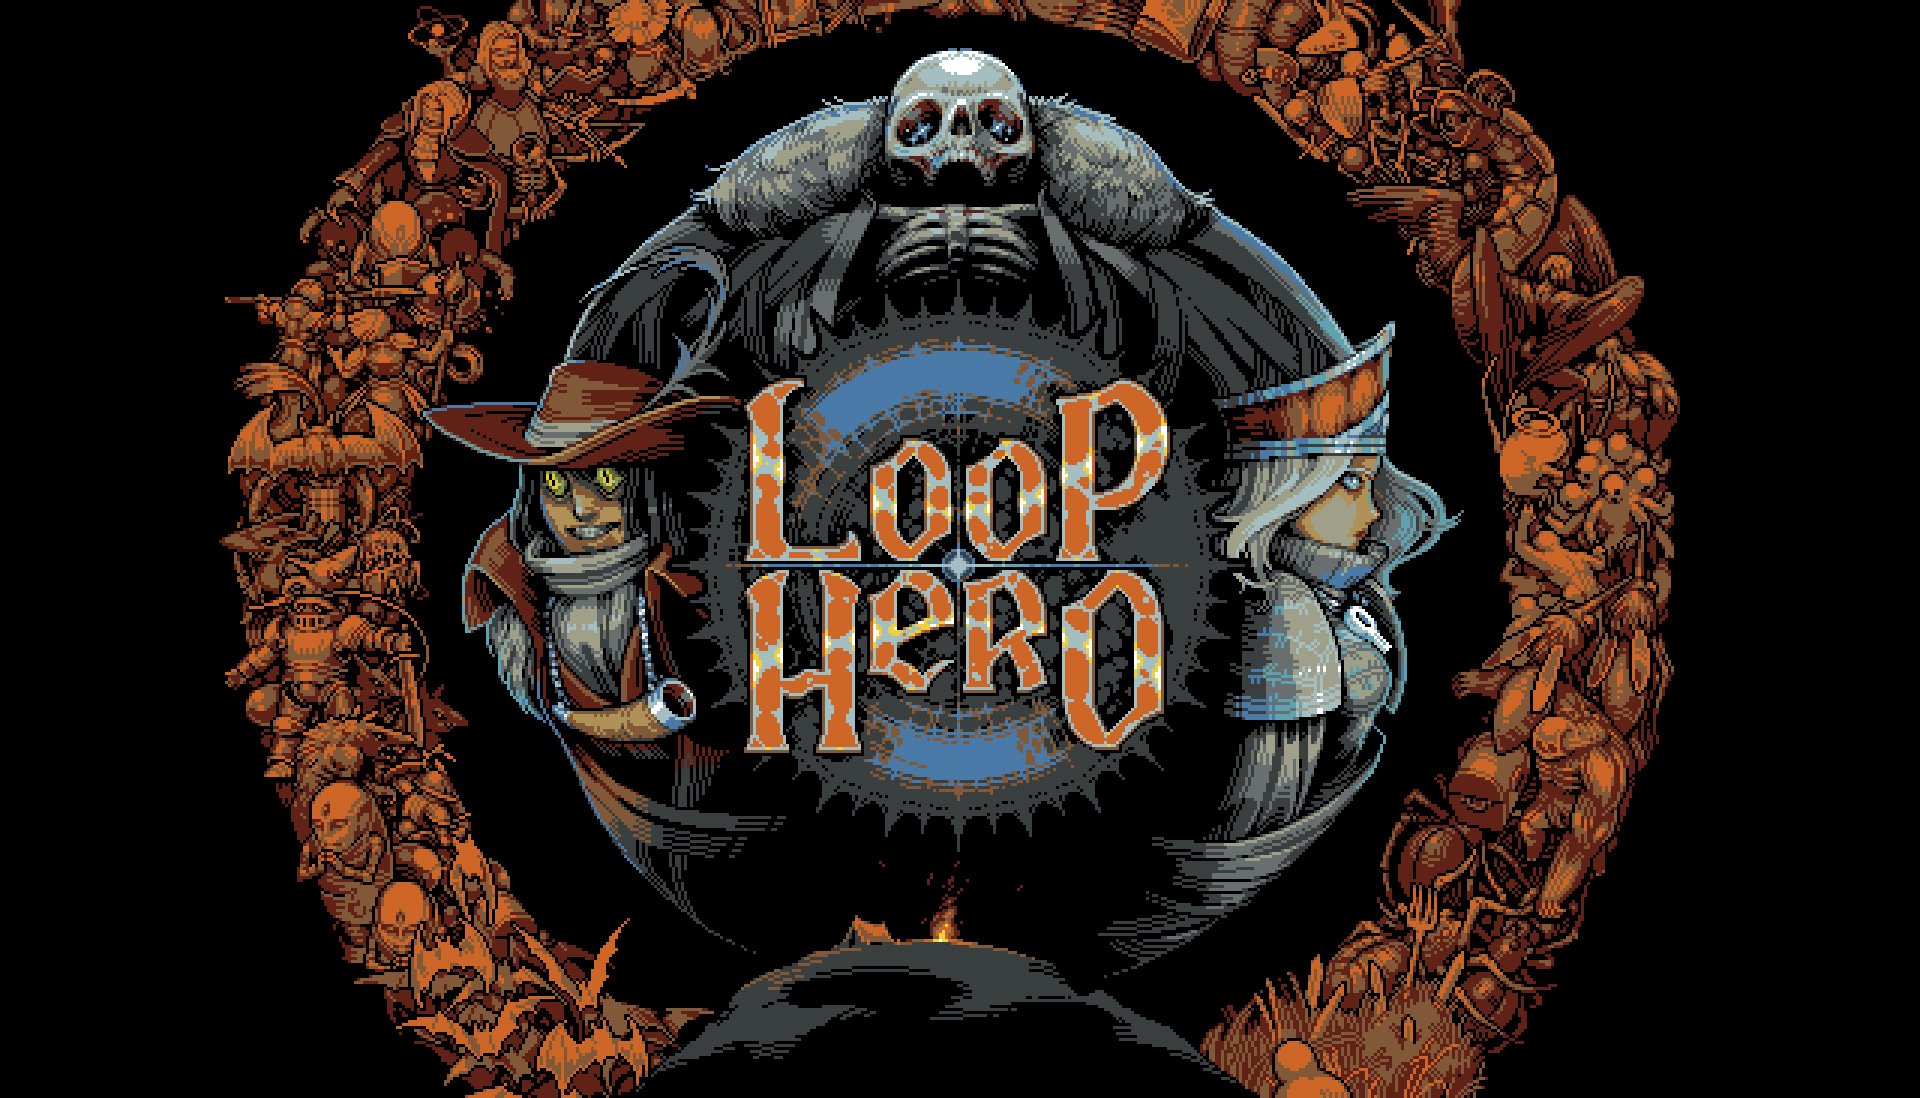 Loop Hero’s easiest trait is its lore